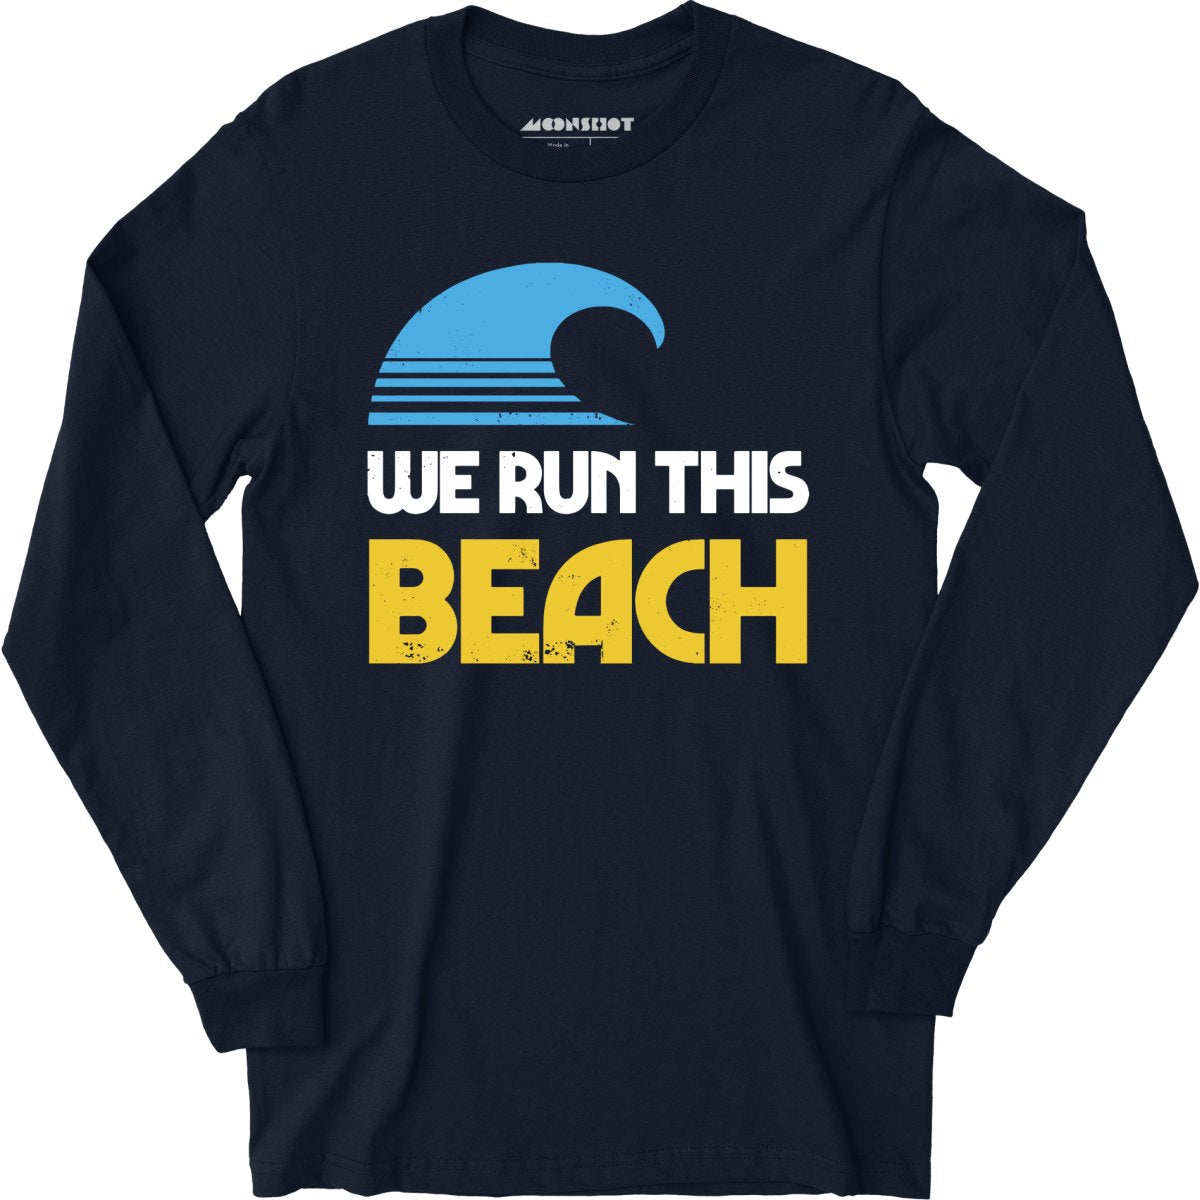 We Run This Beach - Long Sleeve T-Shirt